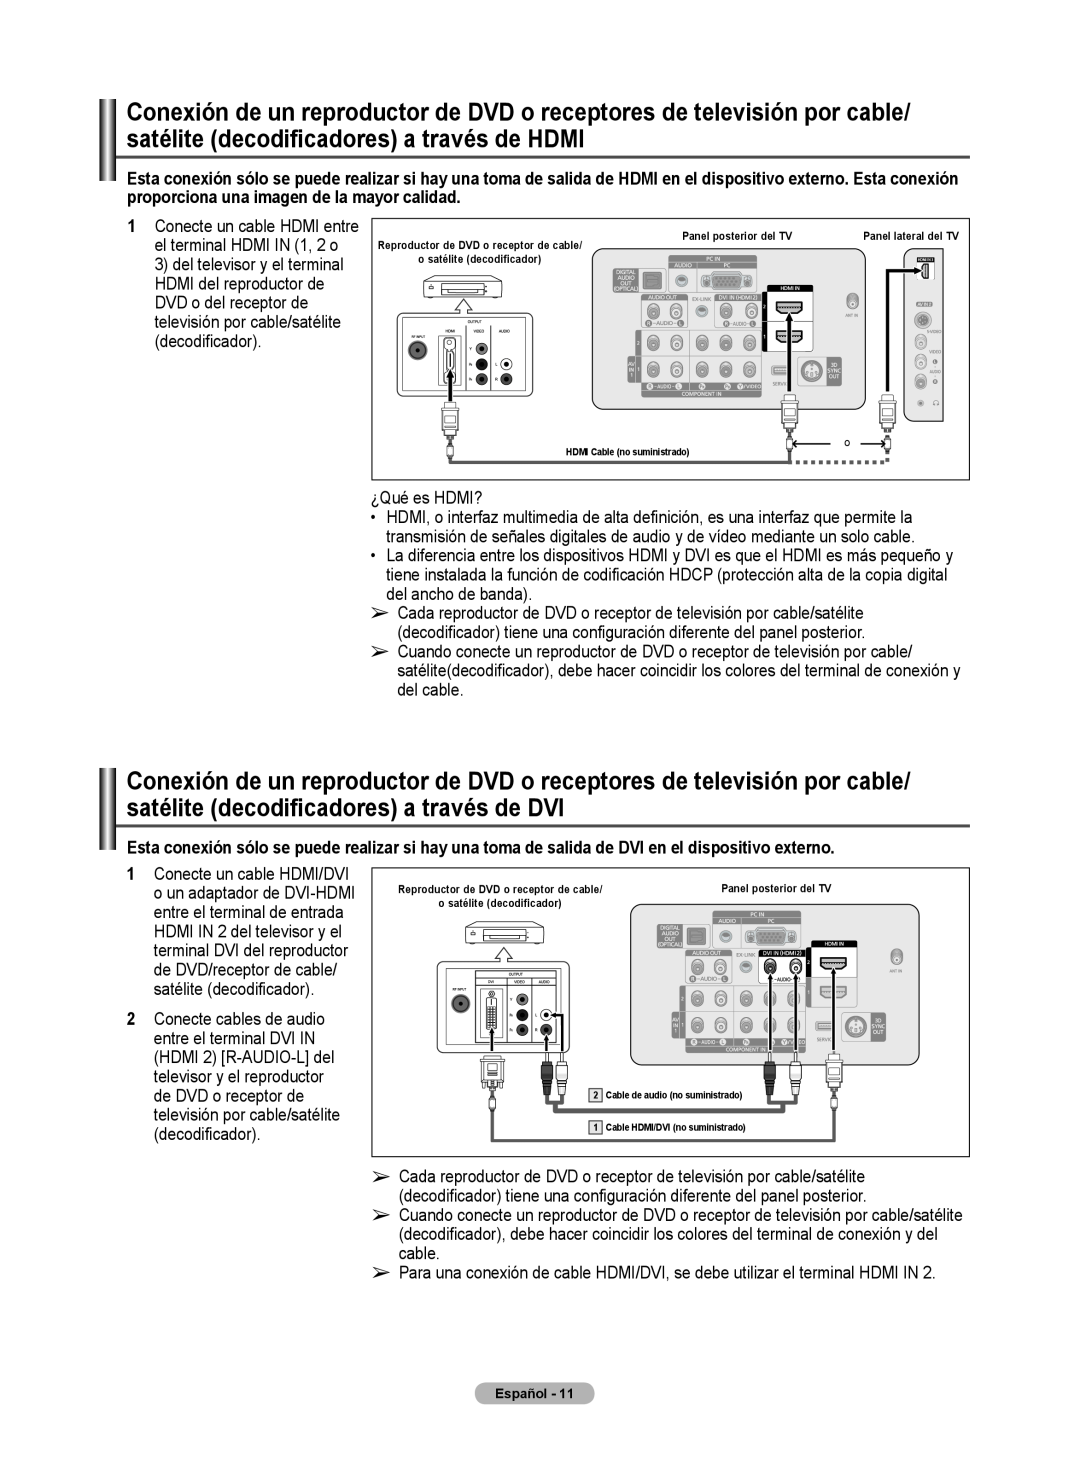 Samsung 460 user manual ¿Qué es HDMI? 